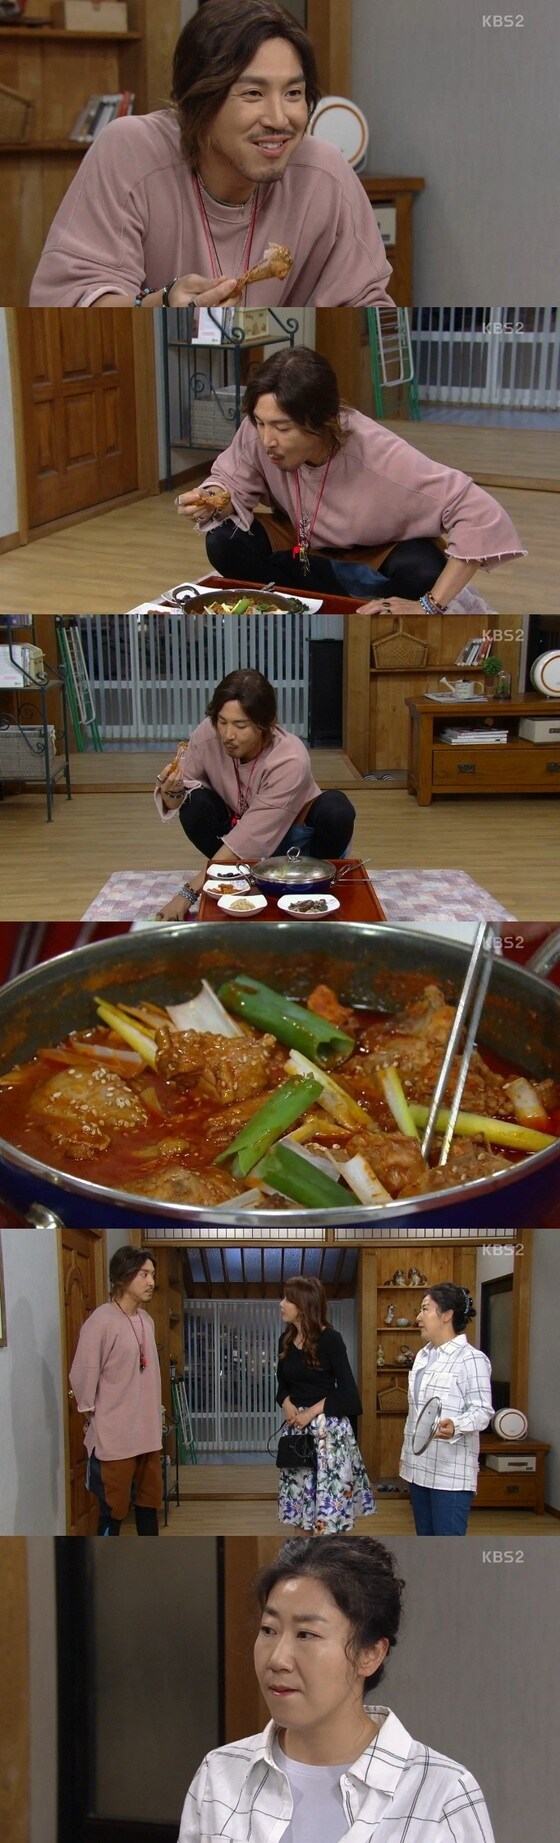 라미란이 최원영에게 화를 냈다. © News1star/ KBS2 '월계수 양복점 신사들'